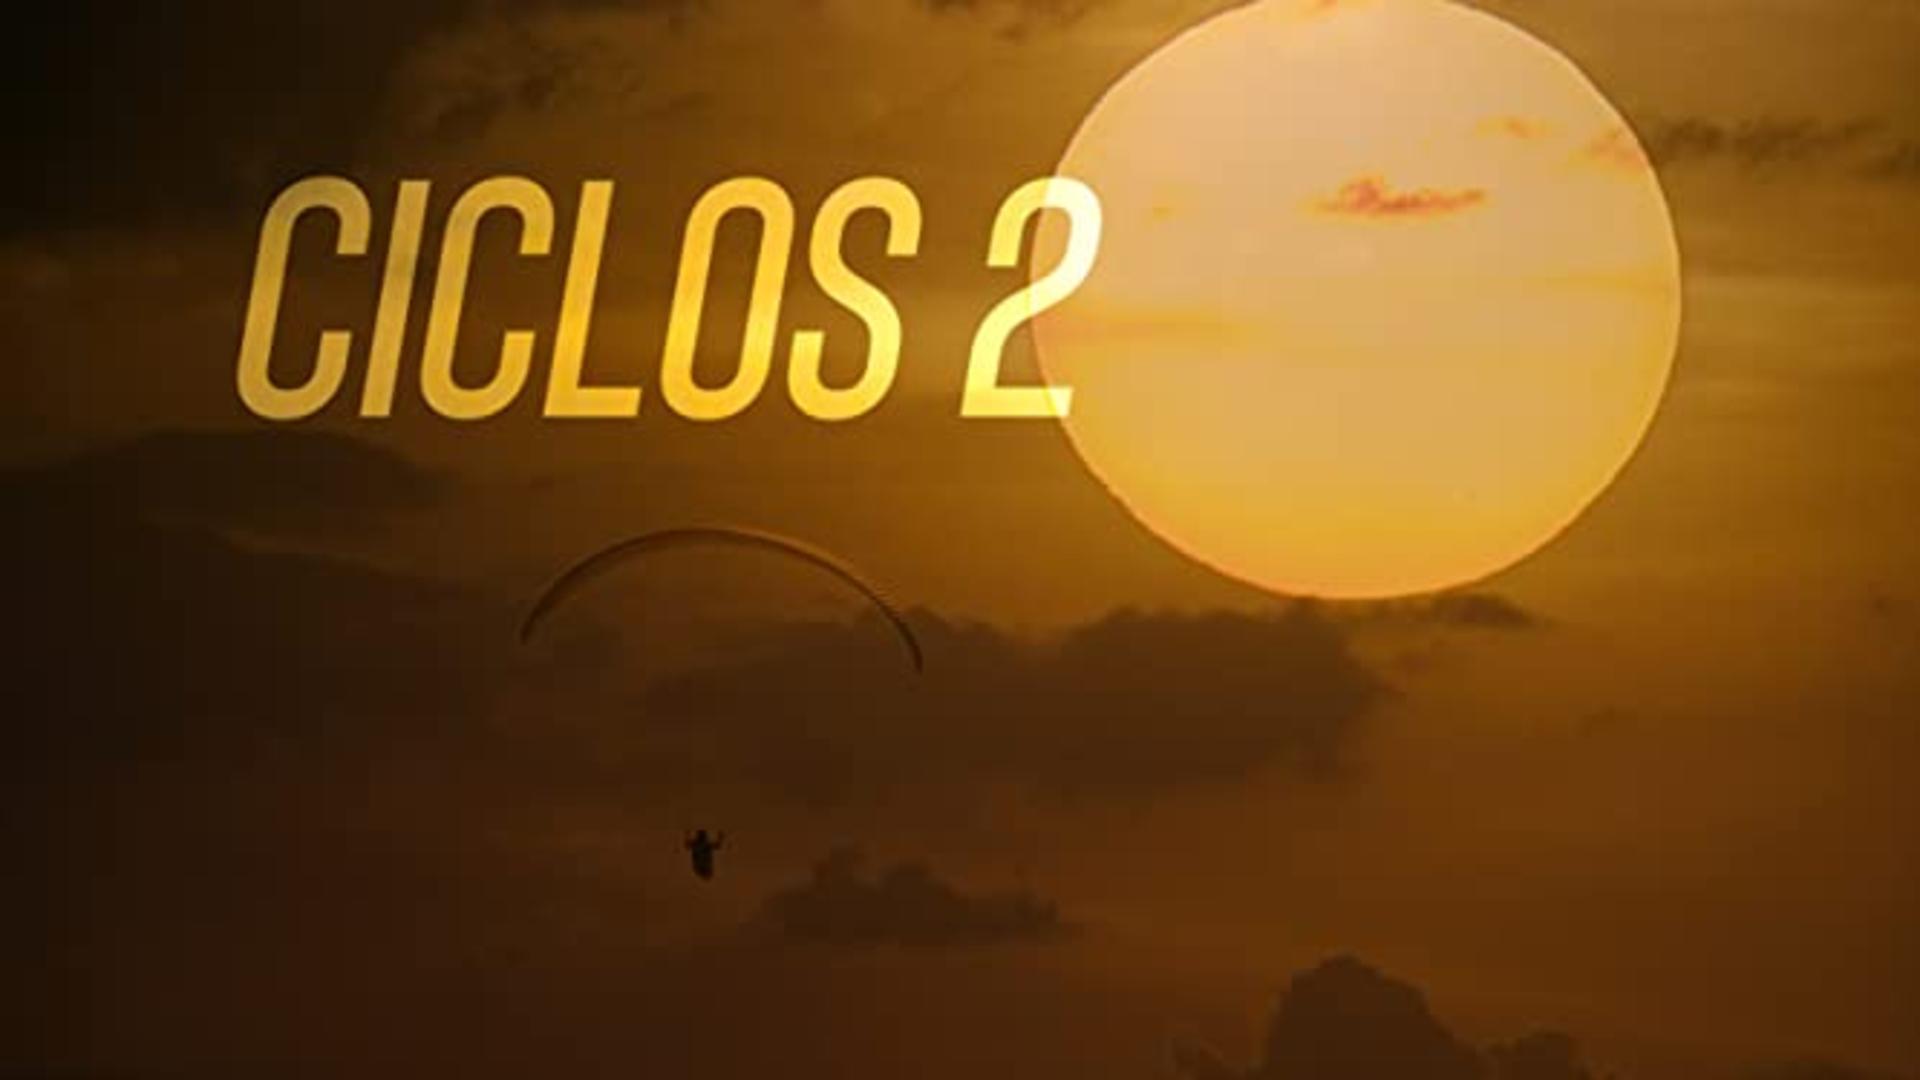 Ciclos 2 (VO) (2018)